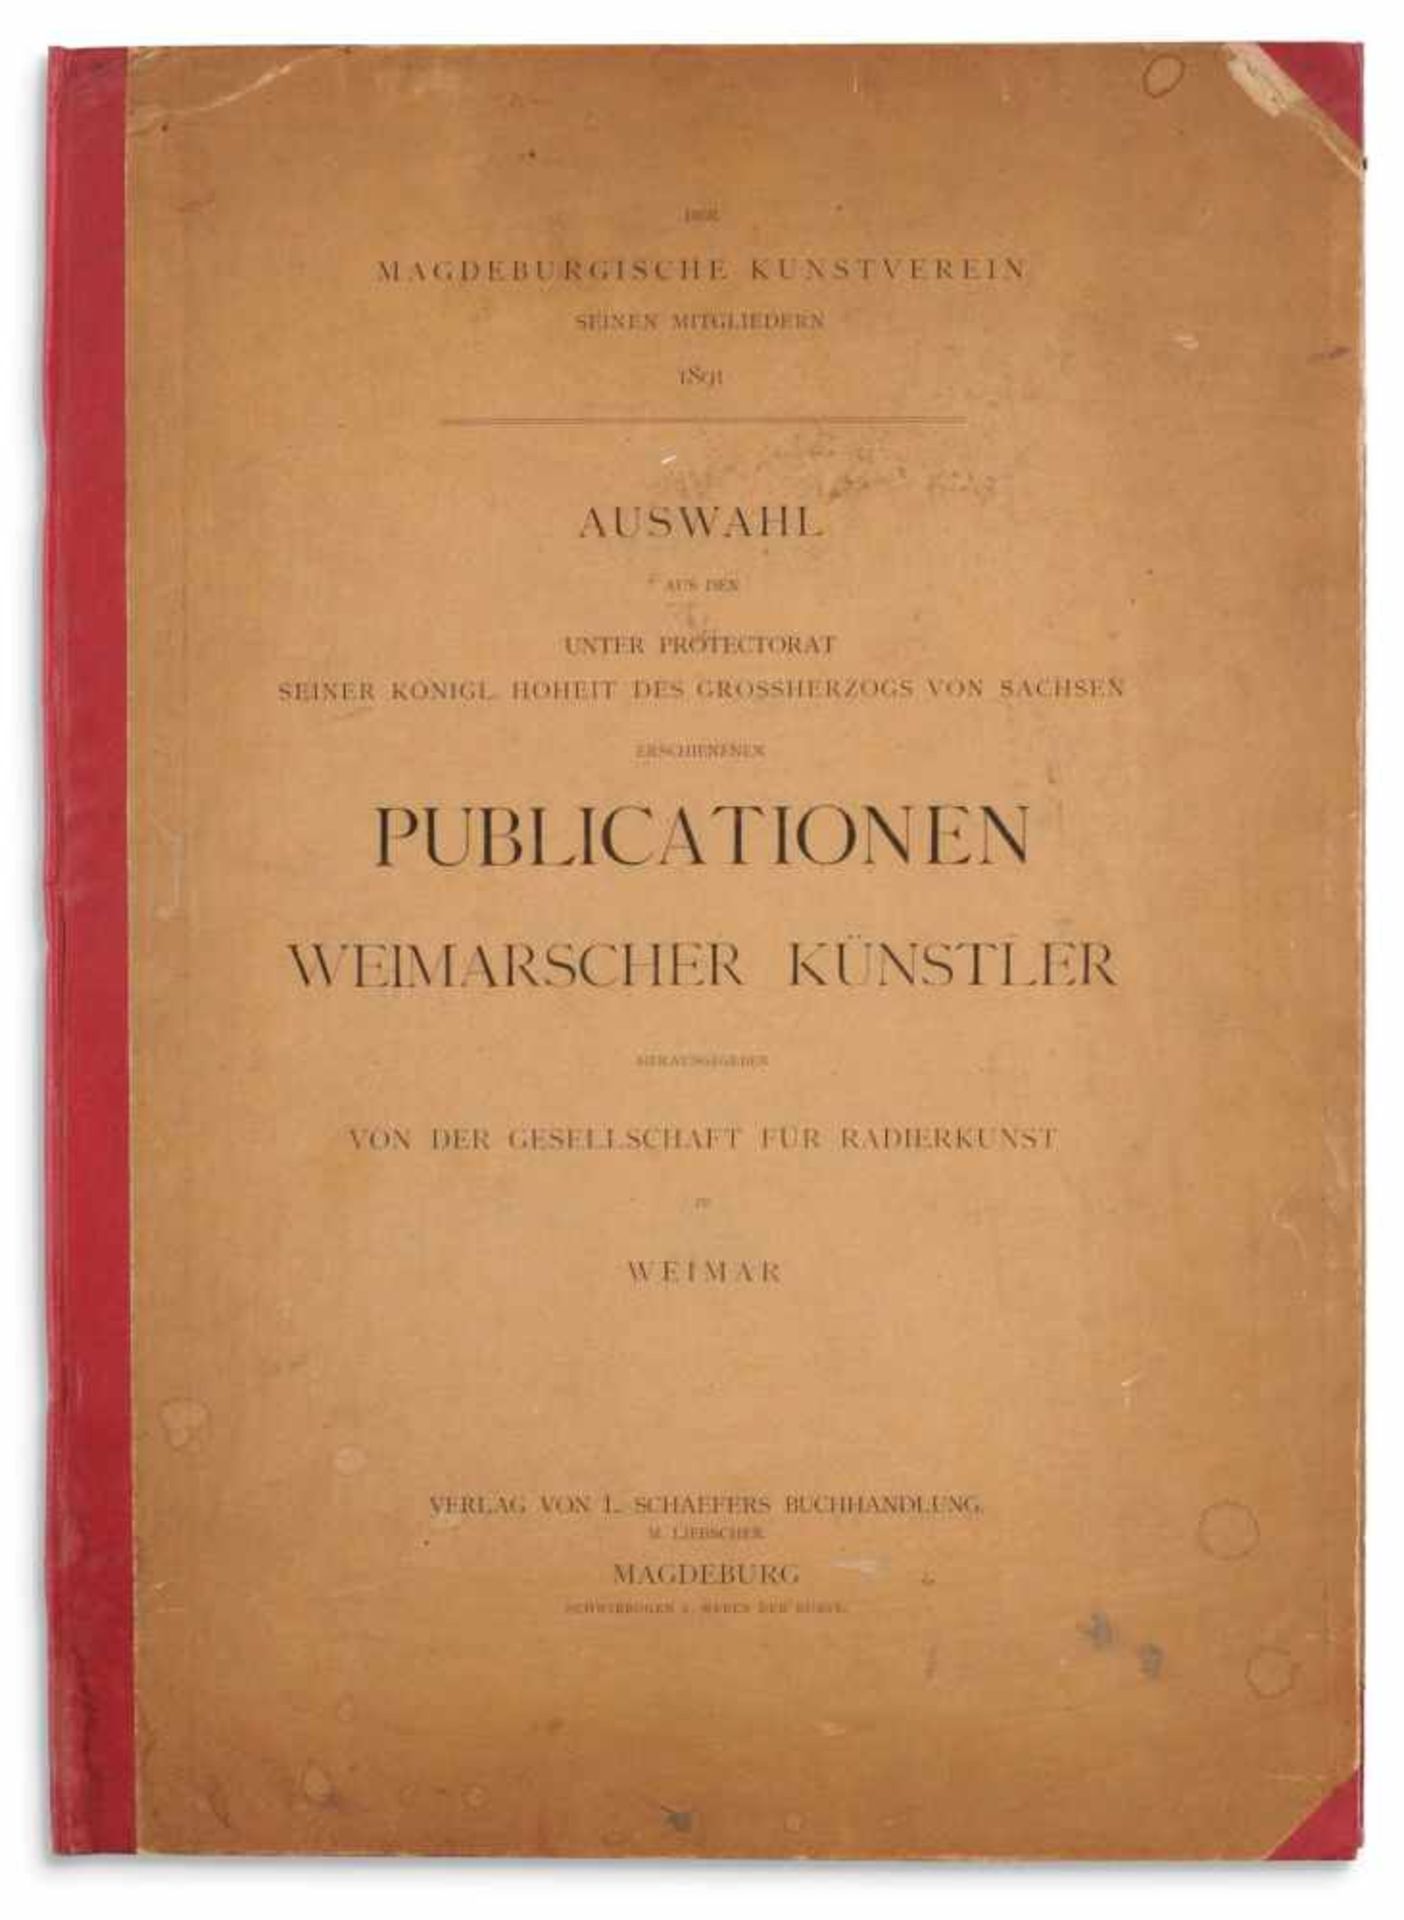 Karl Buchholz und andere Künstler: Der Magdeburgische Kunstverein seinen Mitgliedern 1891. Auswahl - Bild 10 aus 10